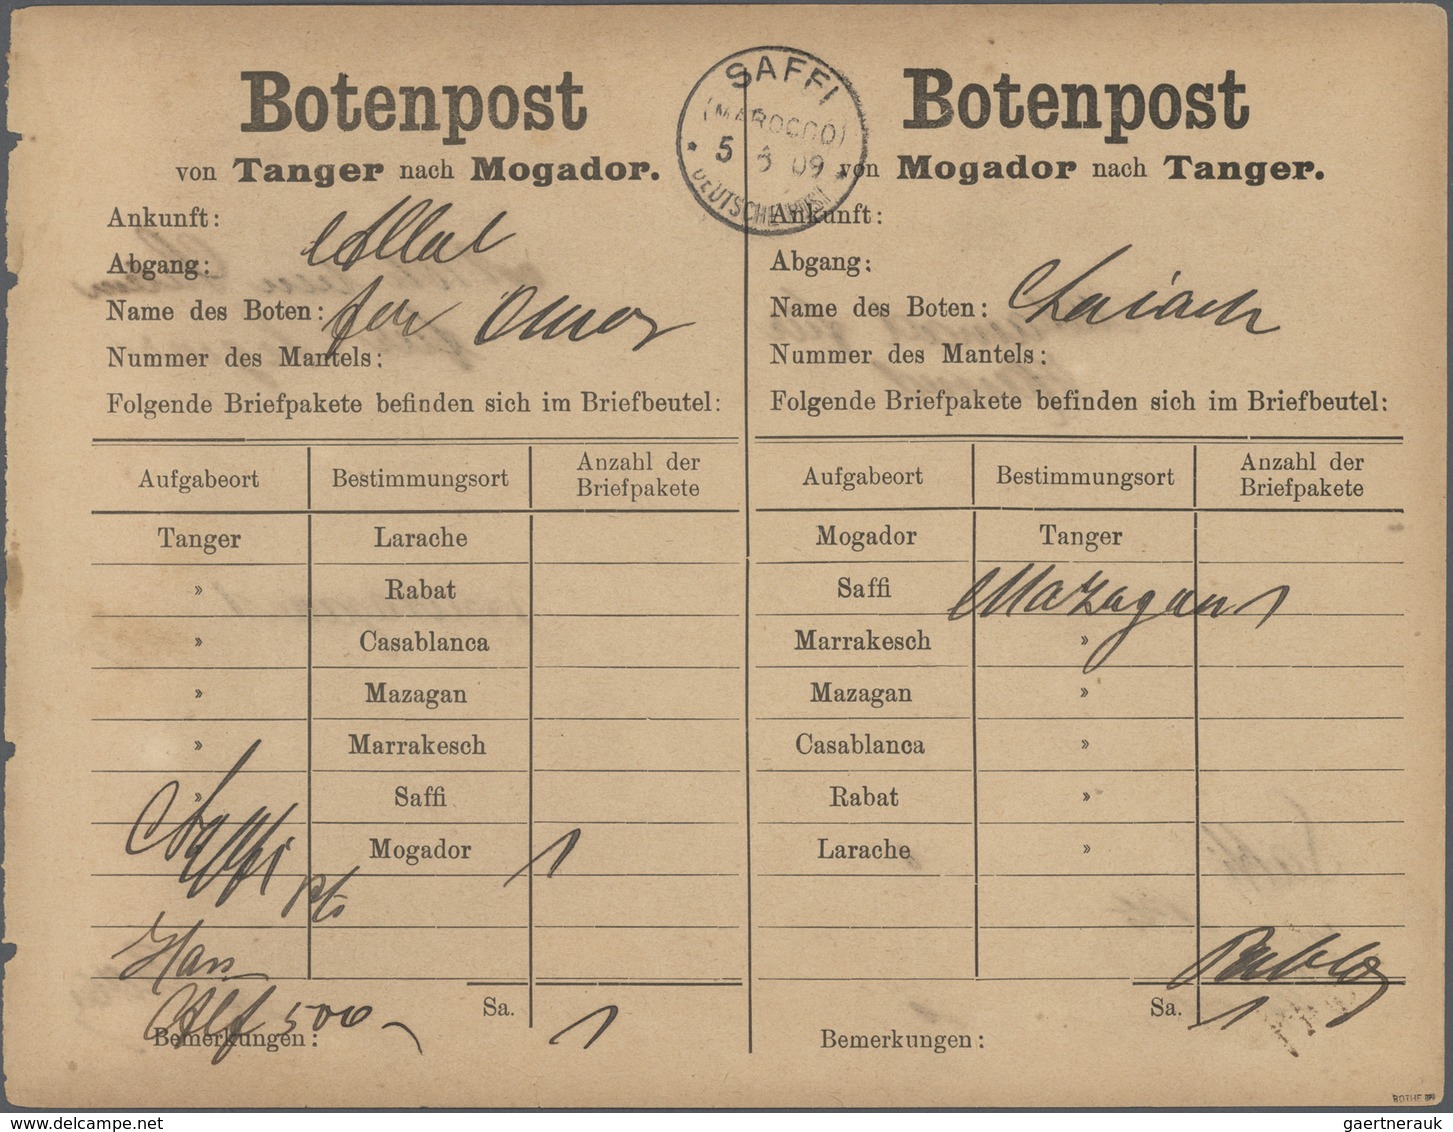 Br Deutsche Post In Marokko - Besonderheiten: 1909 Botenpost-Zettel "Tanger-Mogador", Beide Seiten Am 5 - Deutsche Post In Marokko